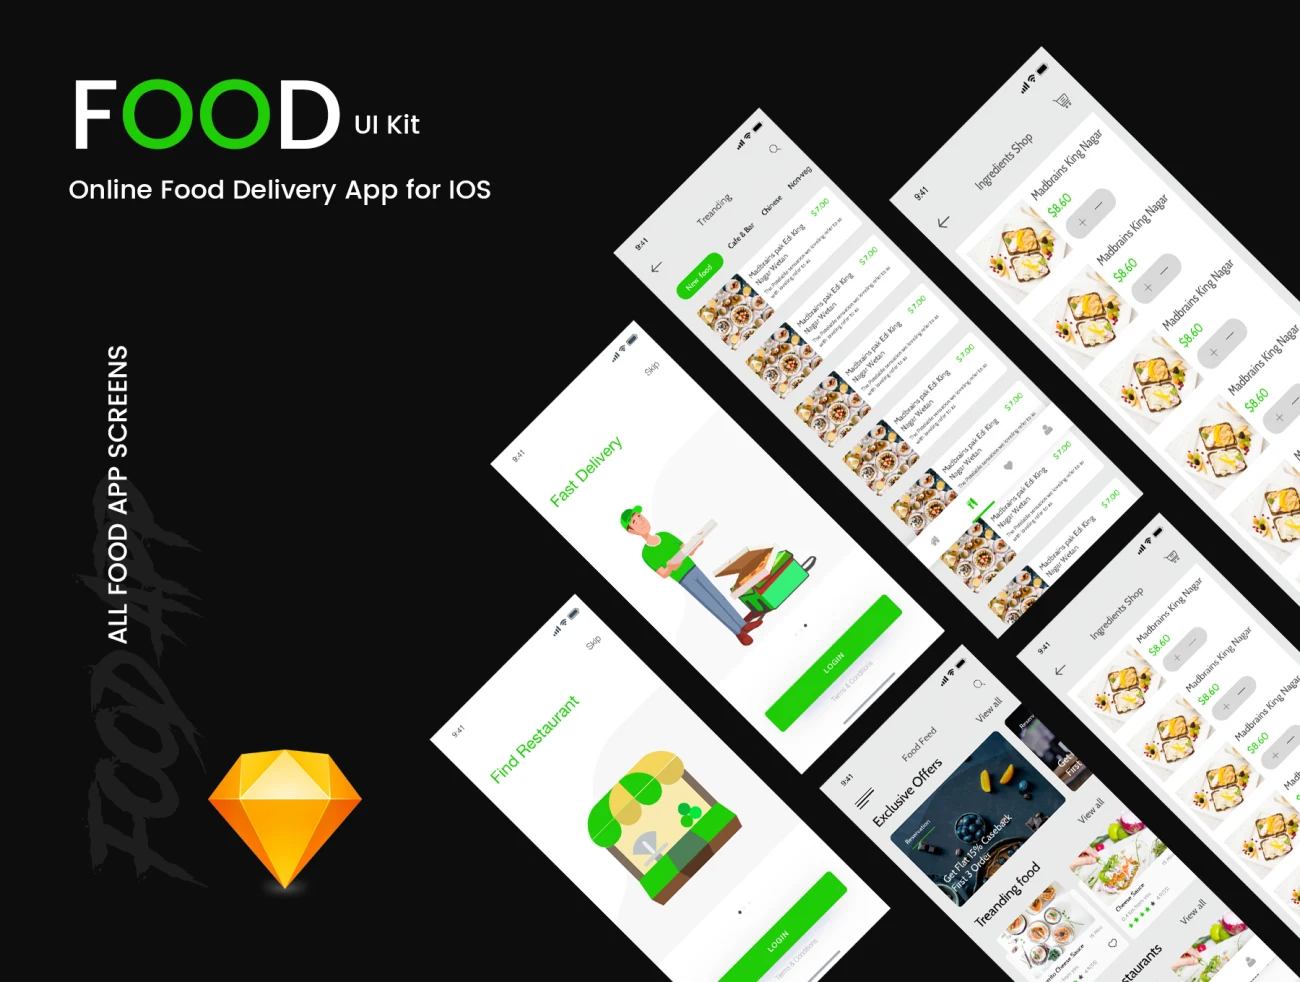 Food UI Kit Directory 食品UI套件合集-UI/UX-到位啦UI